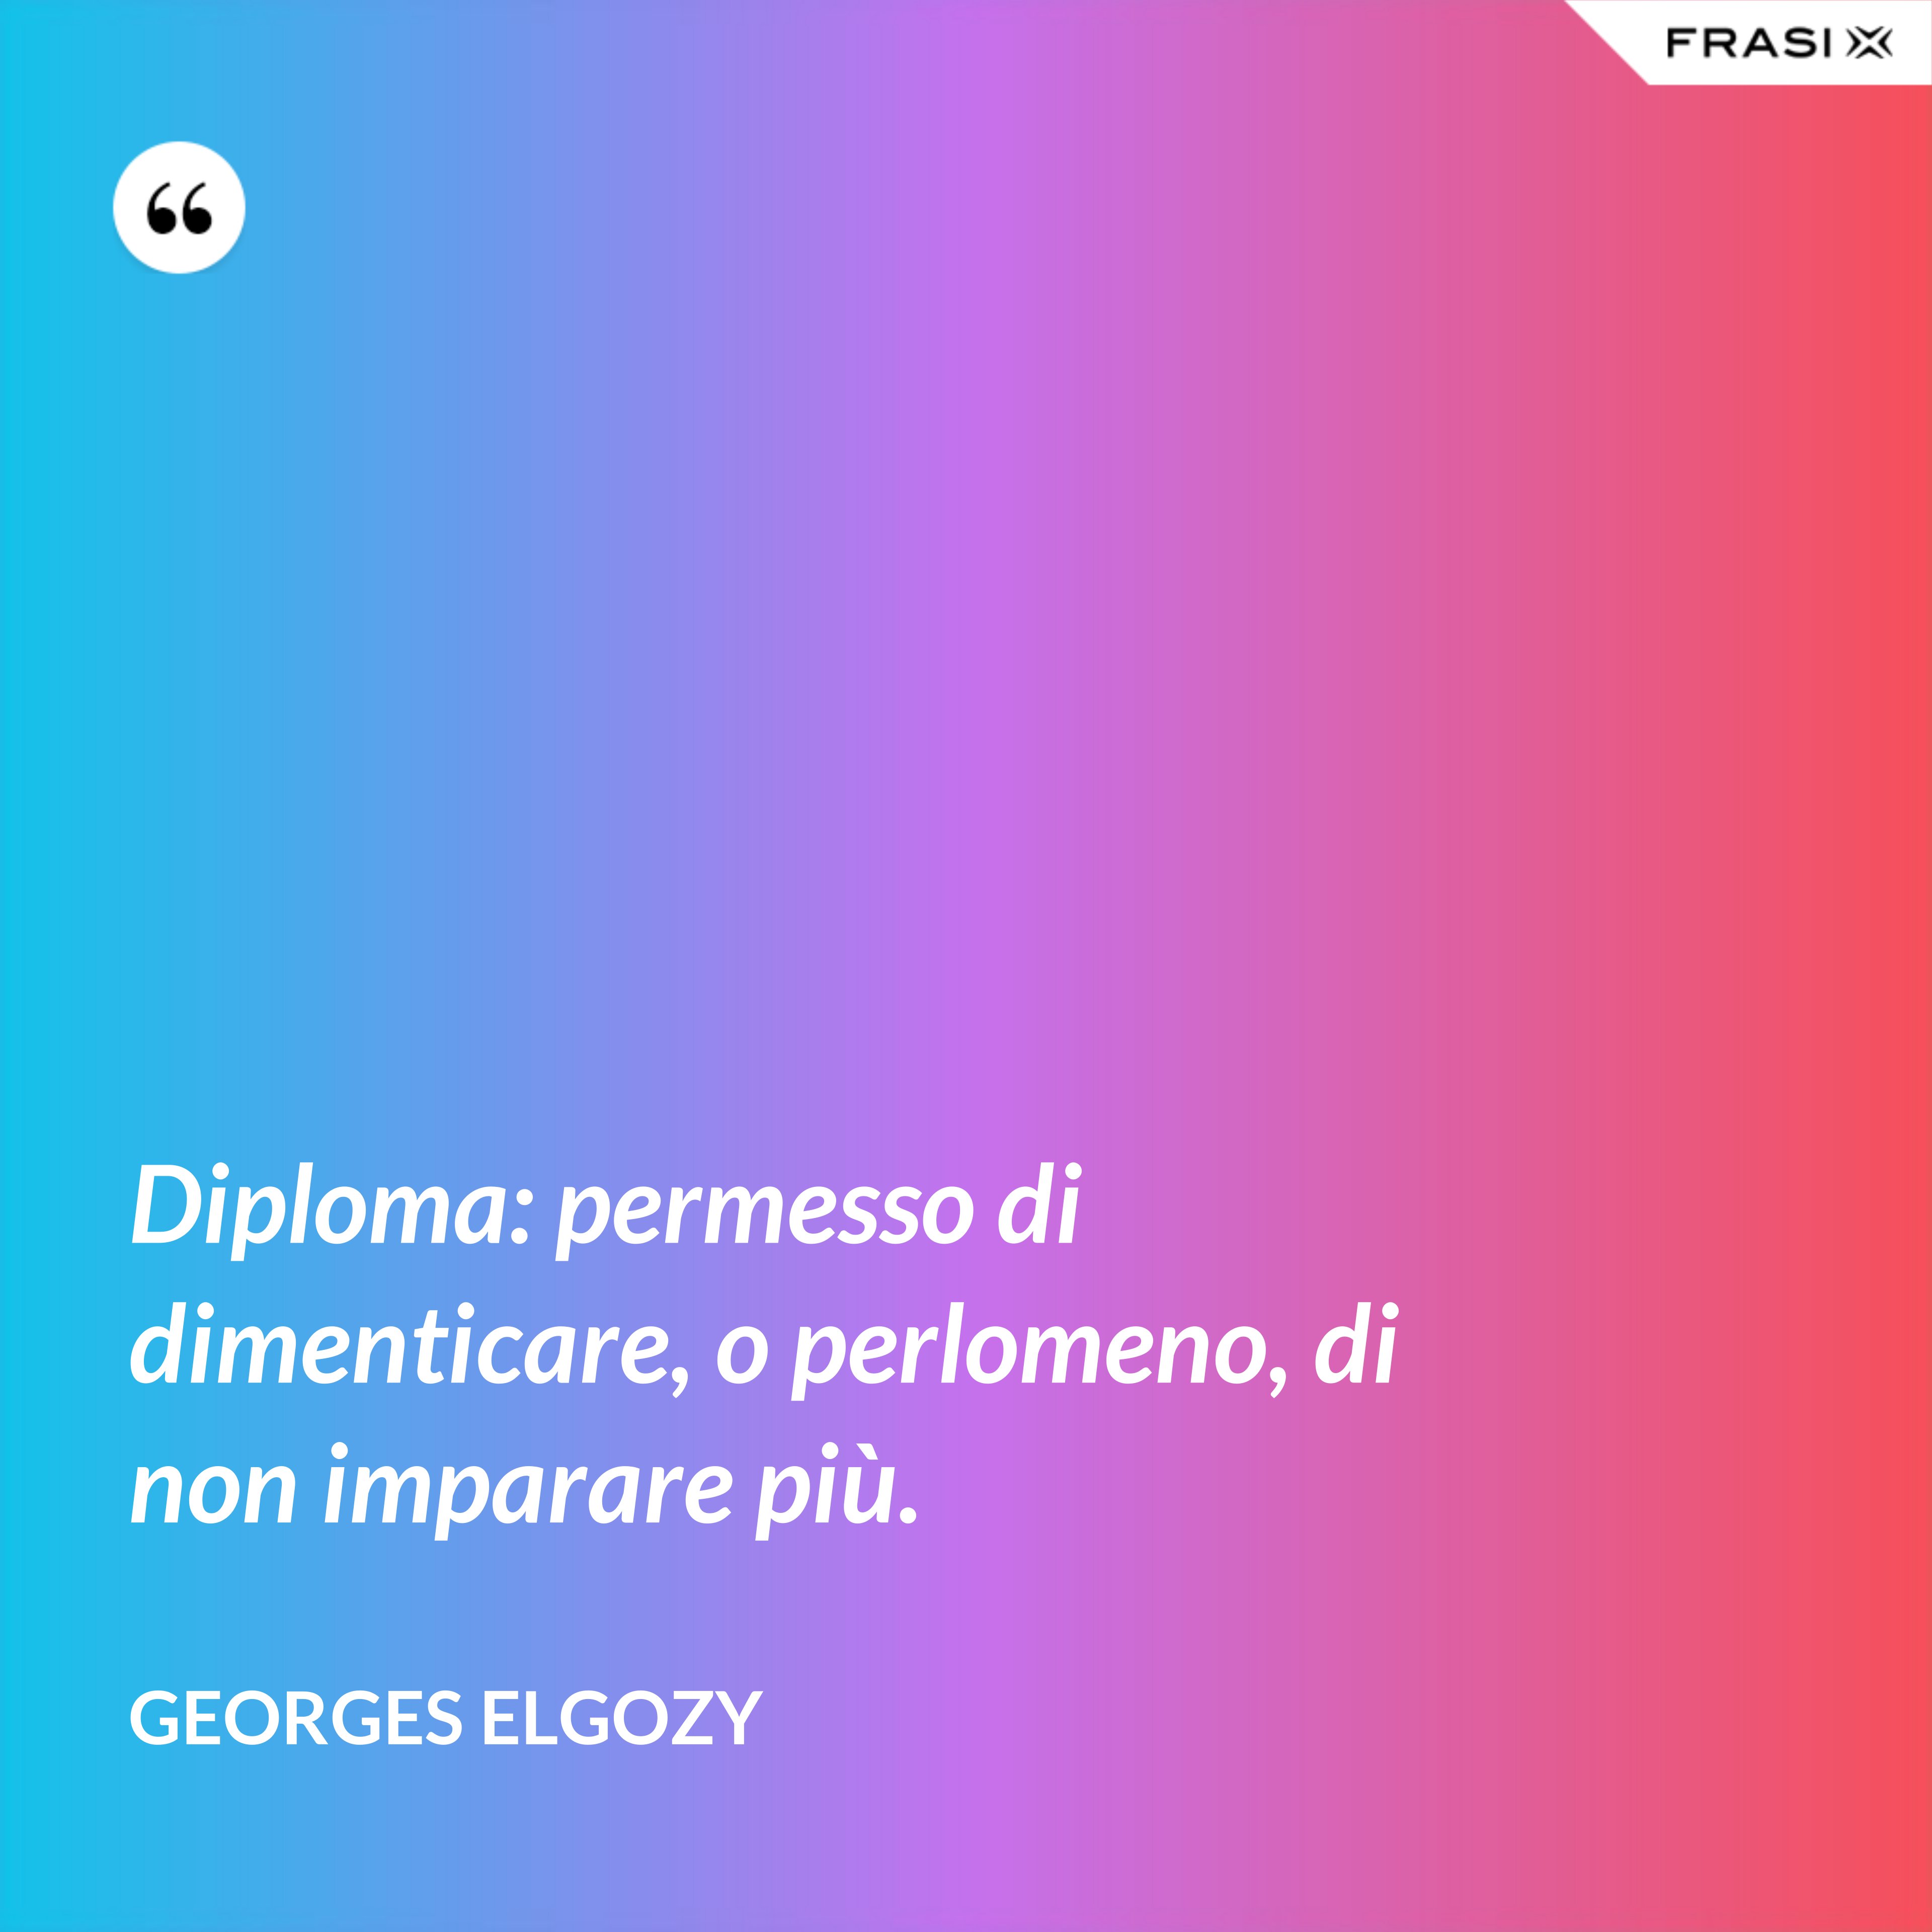 Diploma: permesso di dimenticare, o perlomeno, di non imparare più. - Georges Elgozy